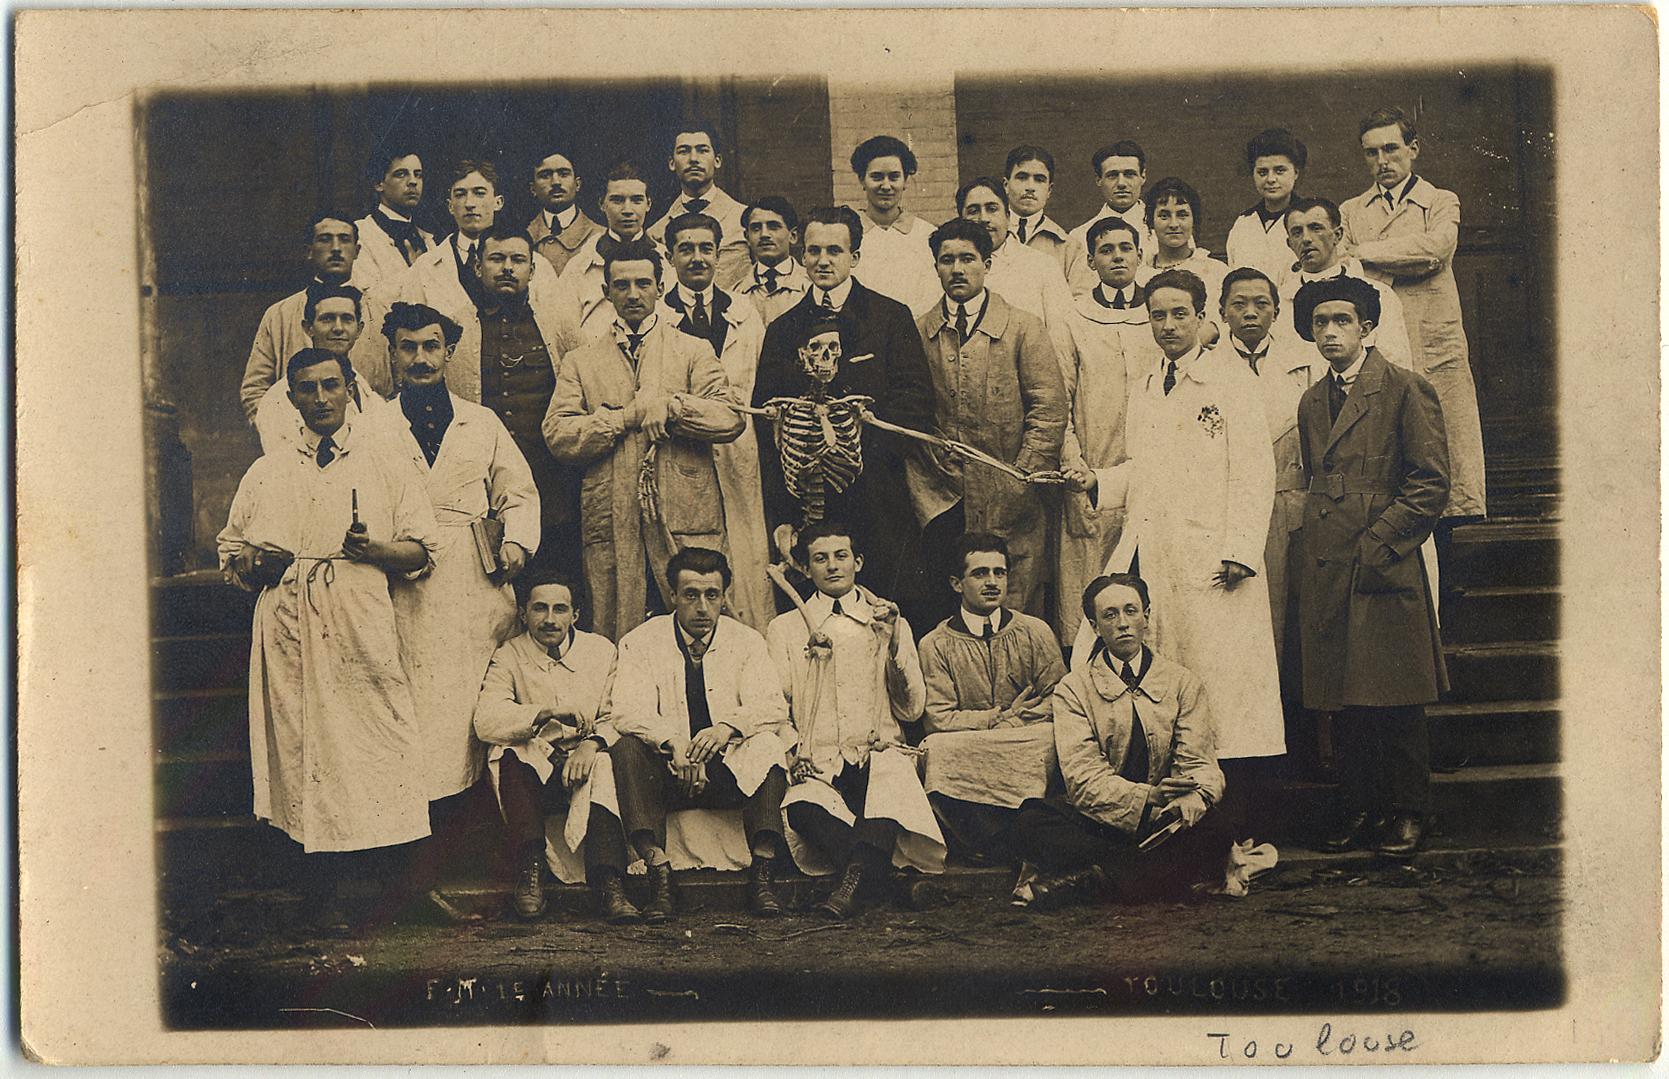 Etudiants en médecine de Toulouse en 1918